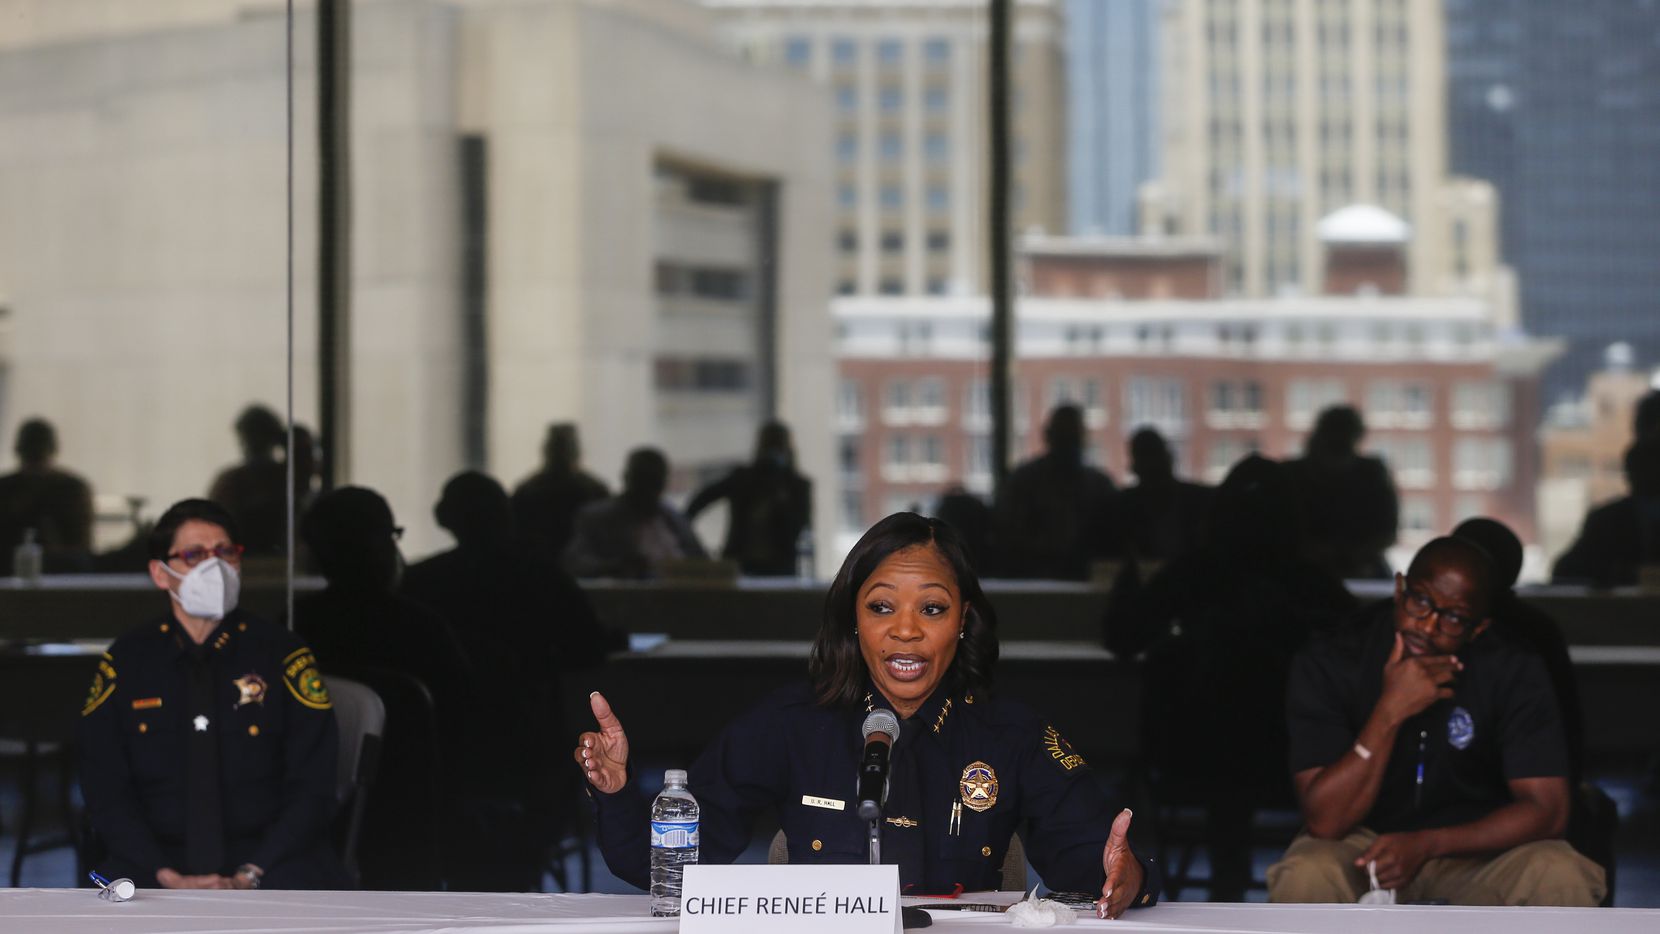 La jefa policial U. Reneé Hall participa en una rueda de prensa sobre seguridad. Un informe interno revela interrogantes en el uso de la fuerza durantes las protestas contra el movimiento Black Lives Matter.